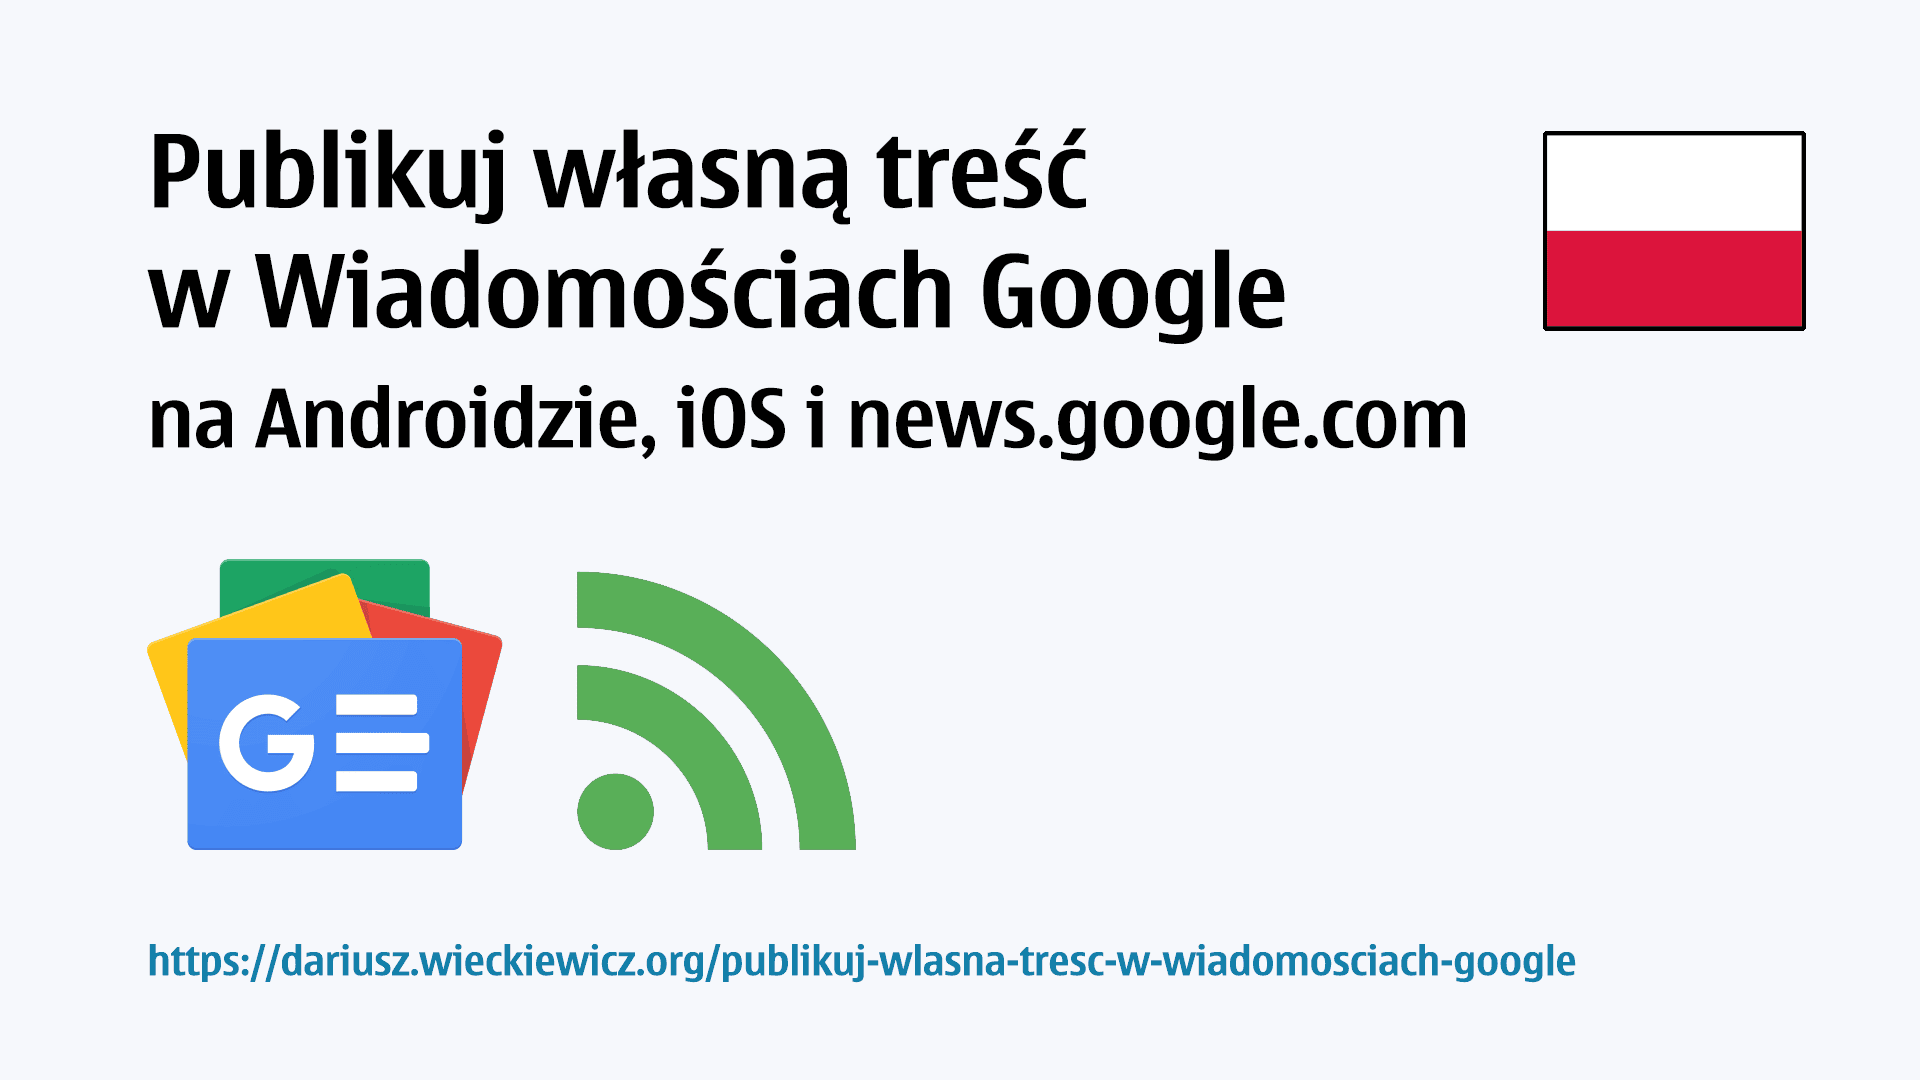 Publikuj własną treść w Wiadomościach Google na Androidzie, iOS i news.google.com